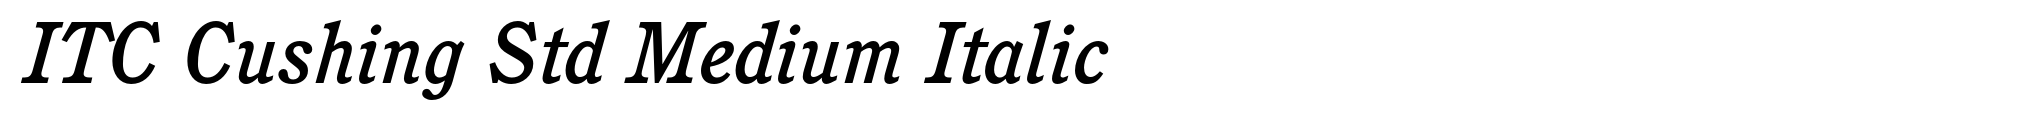 ITC Cushing Std Medium Italic image